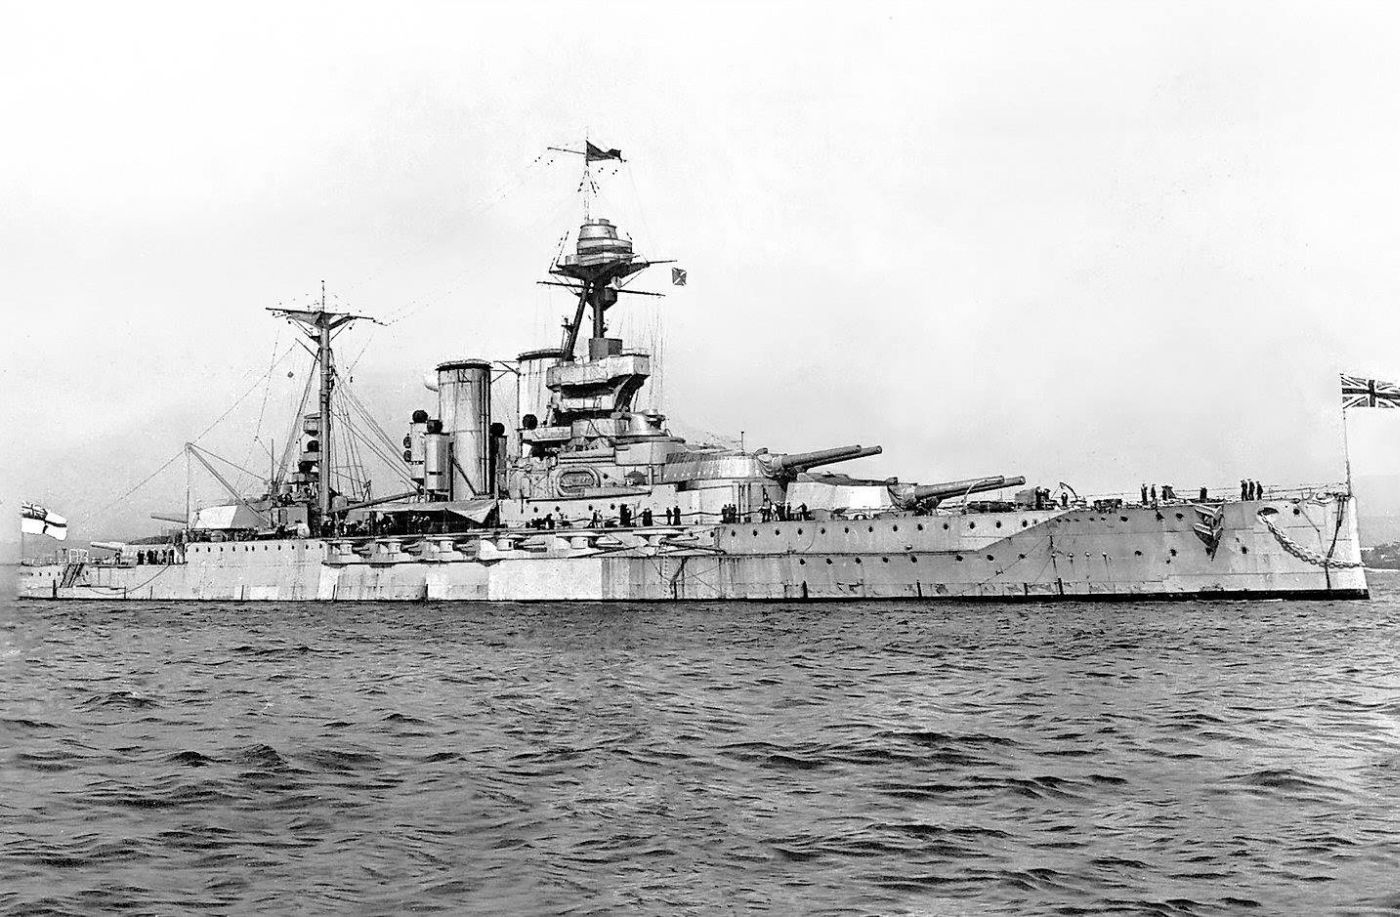 HMS Malaya, a Queen Elizabeth-class battleship